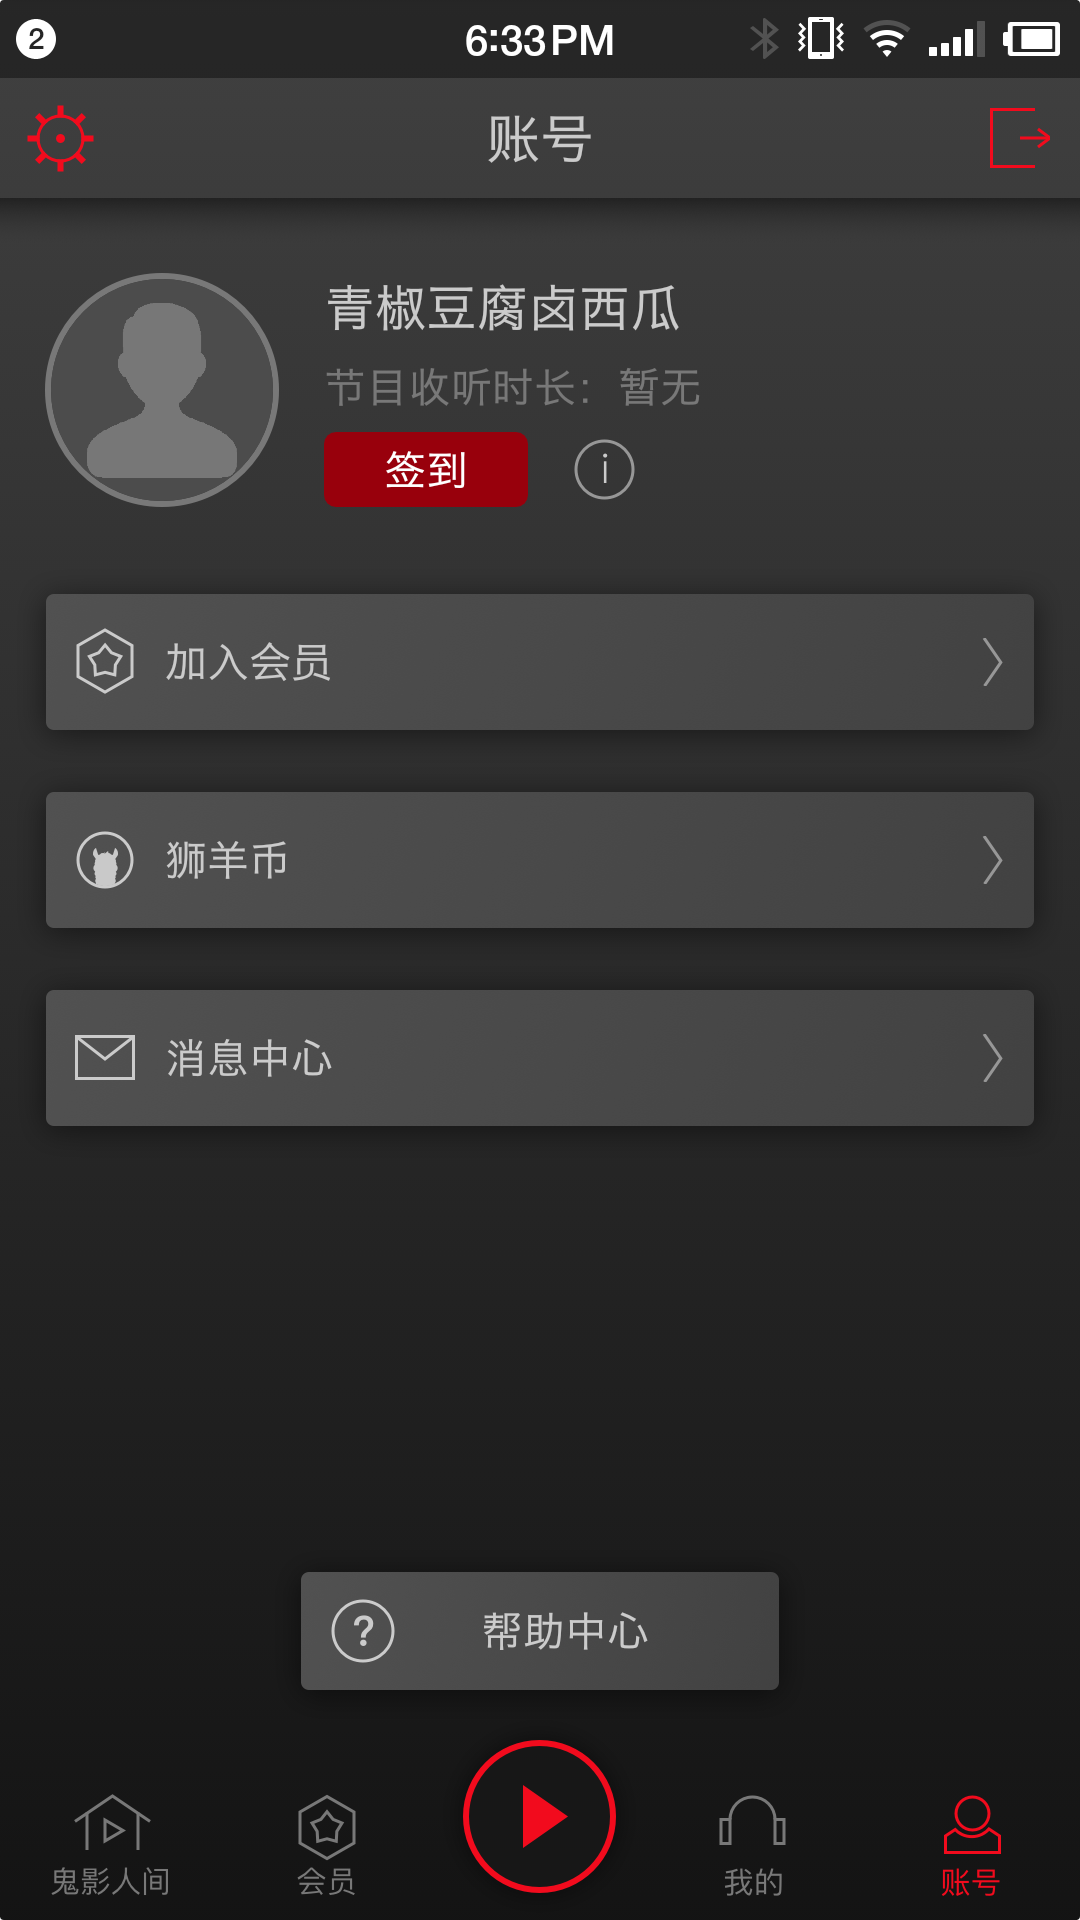 鬼影人间下载安卓最新版 手机app官方版免费安装下载 豌豆荚